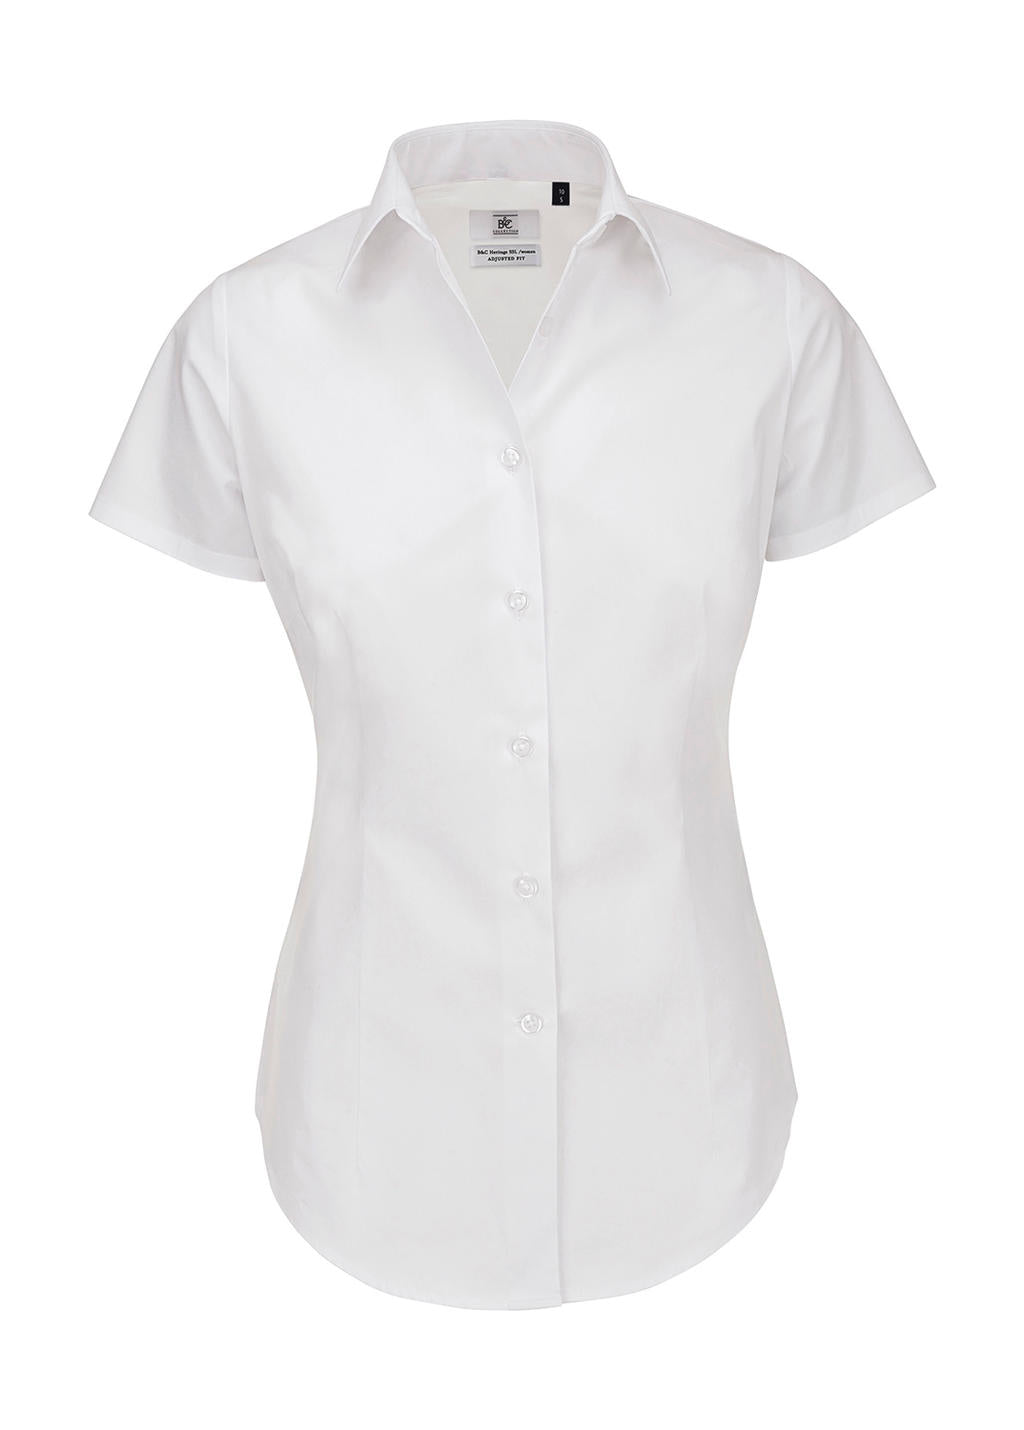 B&C Damen Business Bluse Oberteil T-Shirt Longsleeve Shirt kurzarm